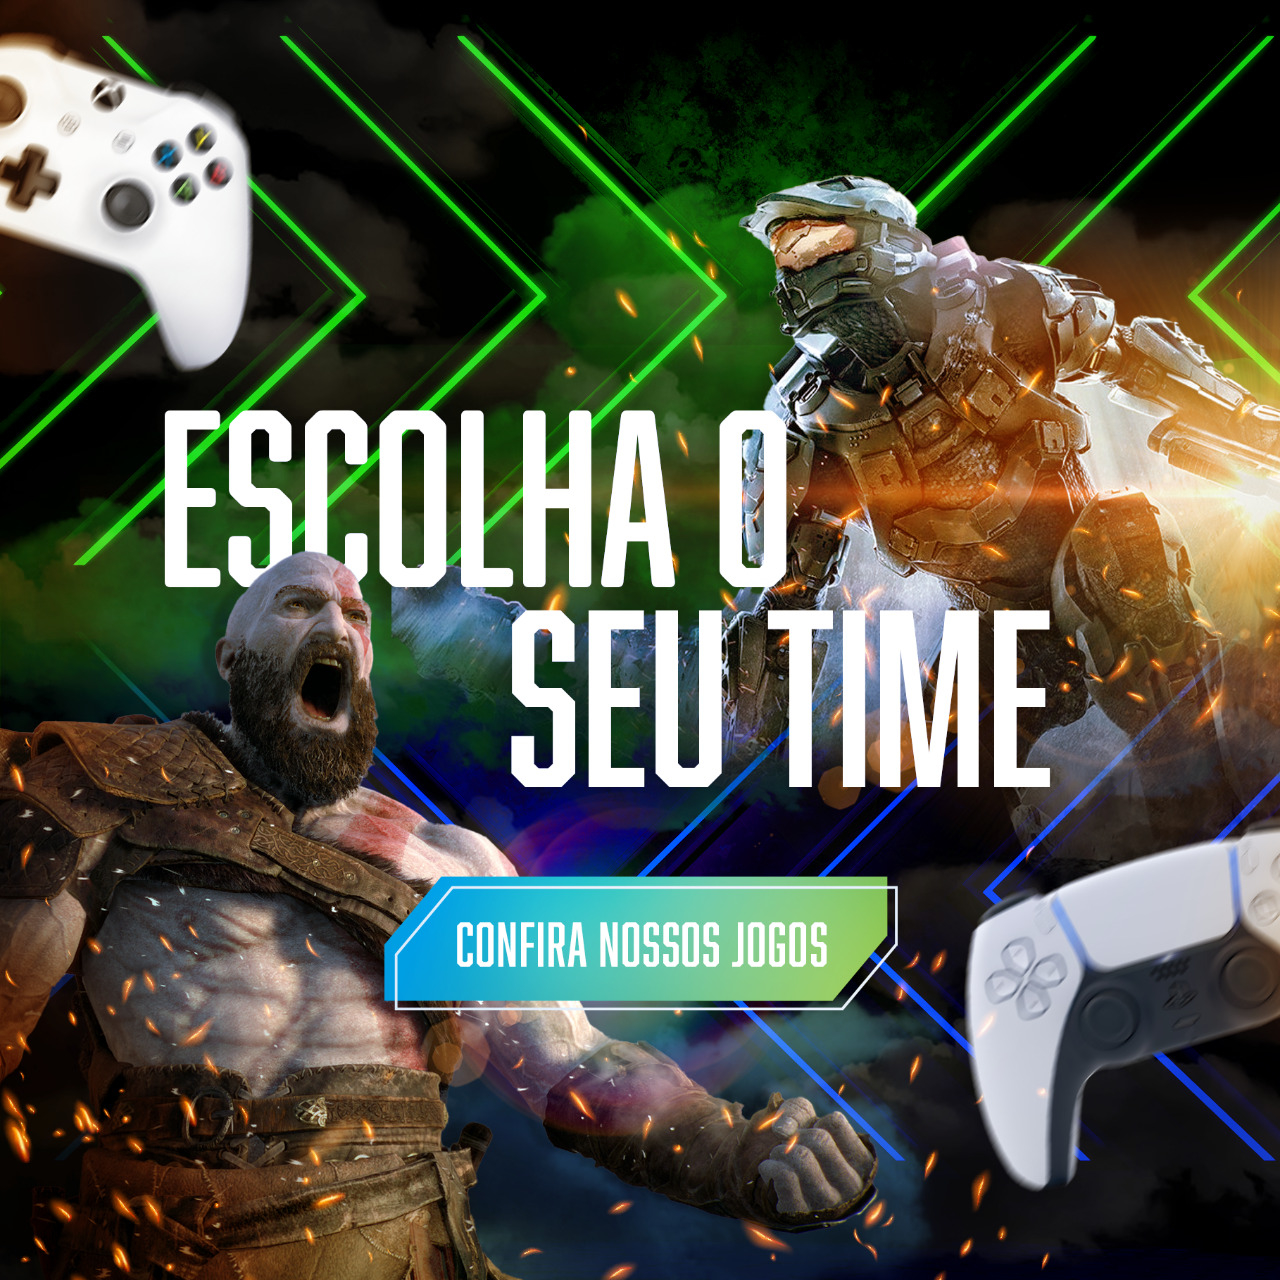 Games - Caruaru, Pernambuco